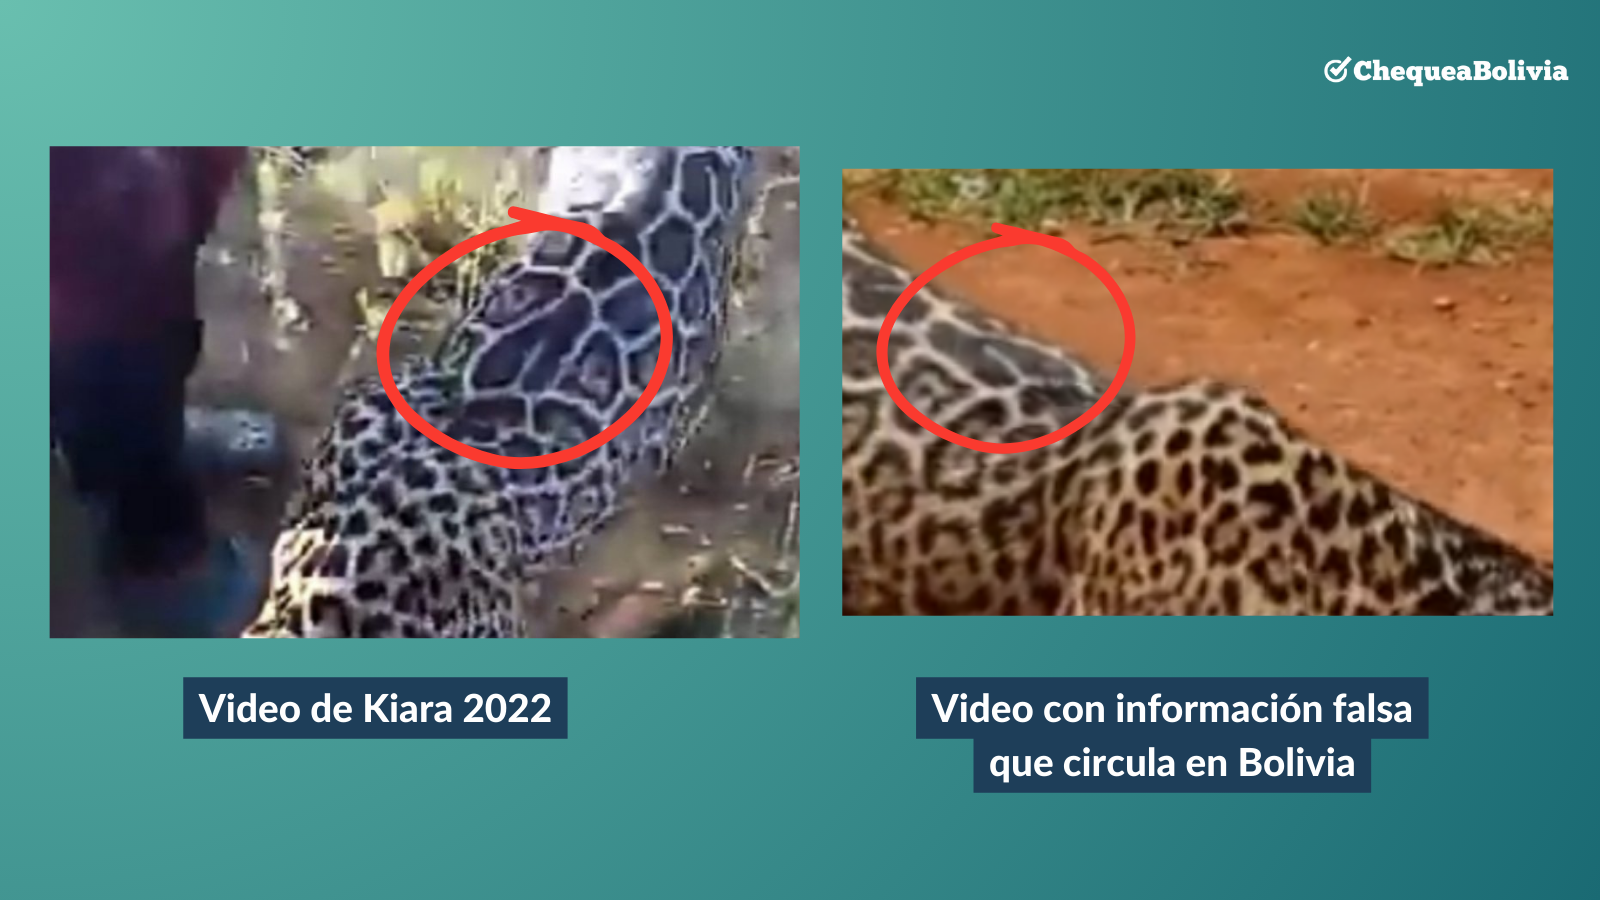 Comparación entre una imagen del jaguar en Venezuela y el video falso que circula en Bolivia.